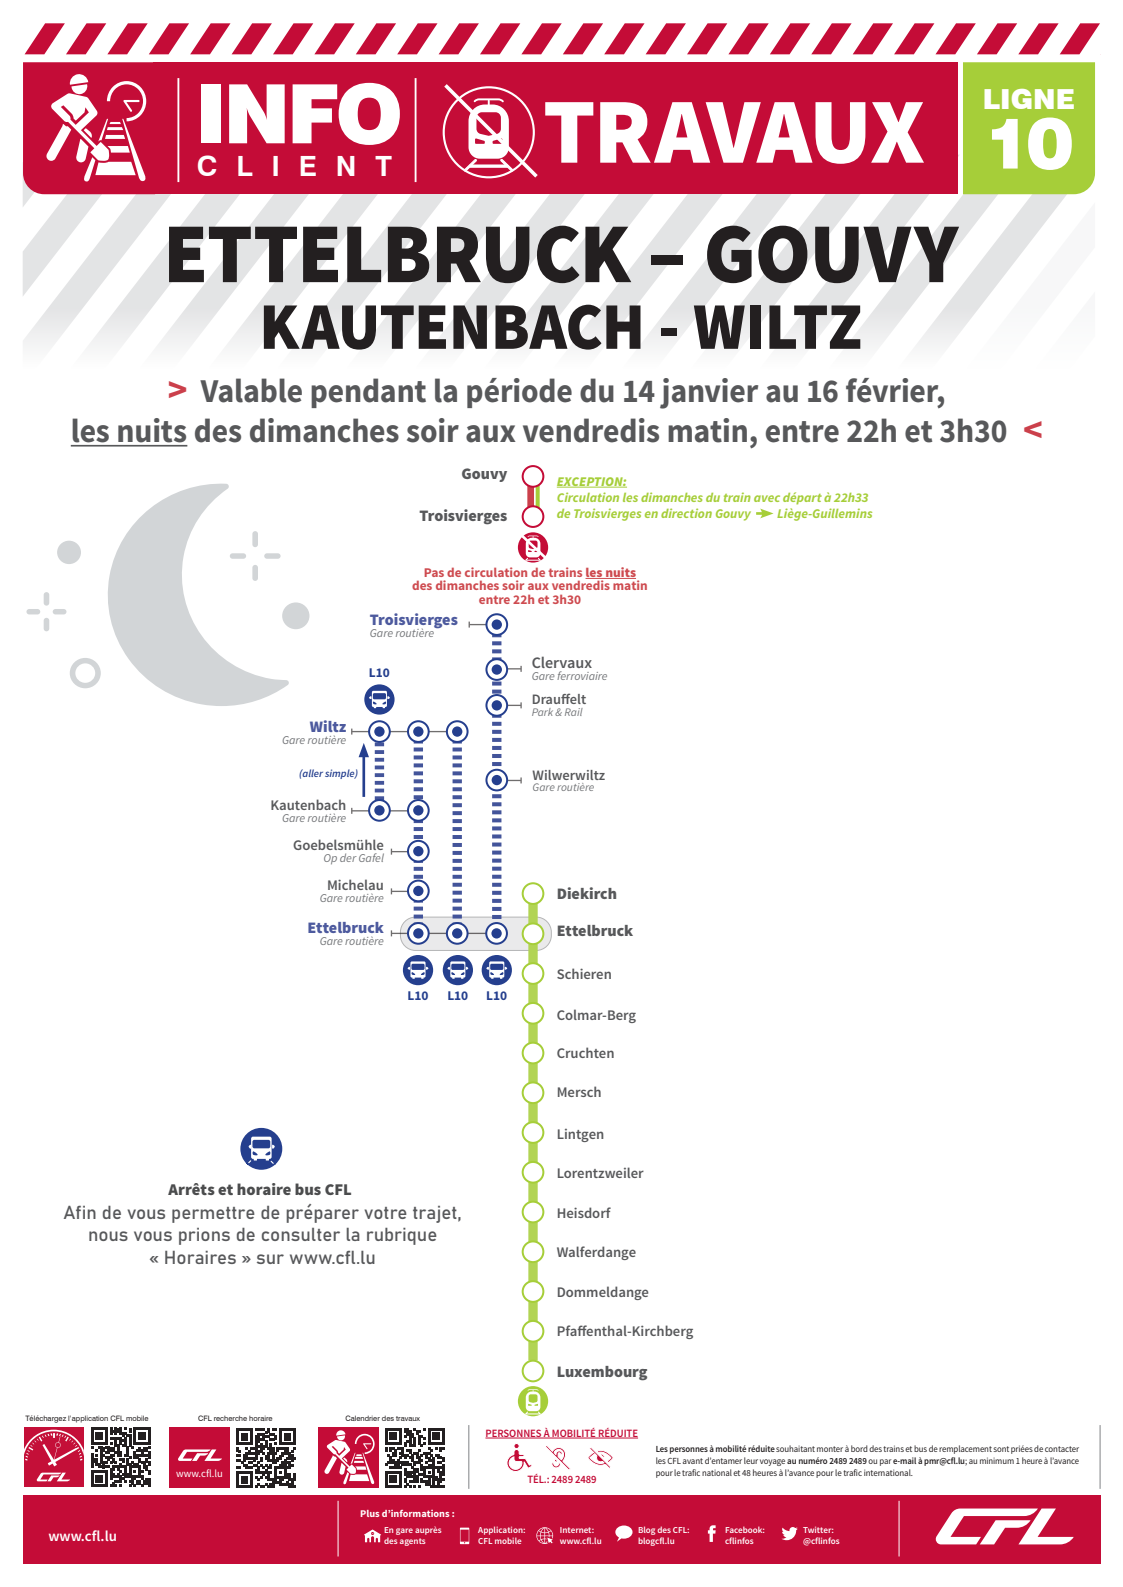 Info CFL - Ettelbruck - Gouvy - Travaux de nuit 14 janvier au 16 février entre 22h et 3h30